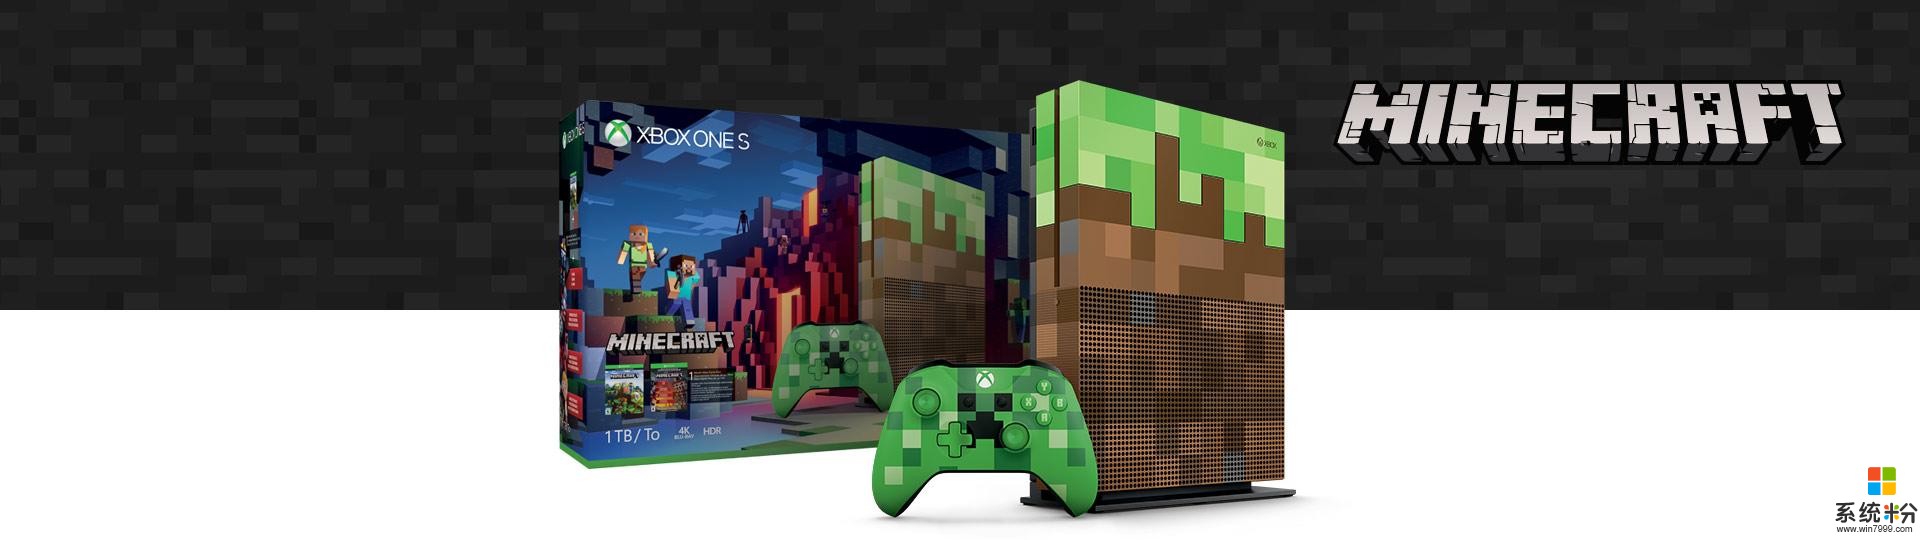 微软将推《我的世界》特别版Xbox One S主机